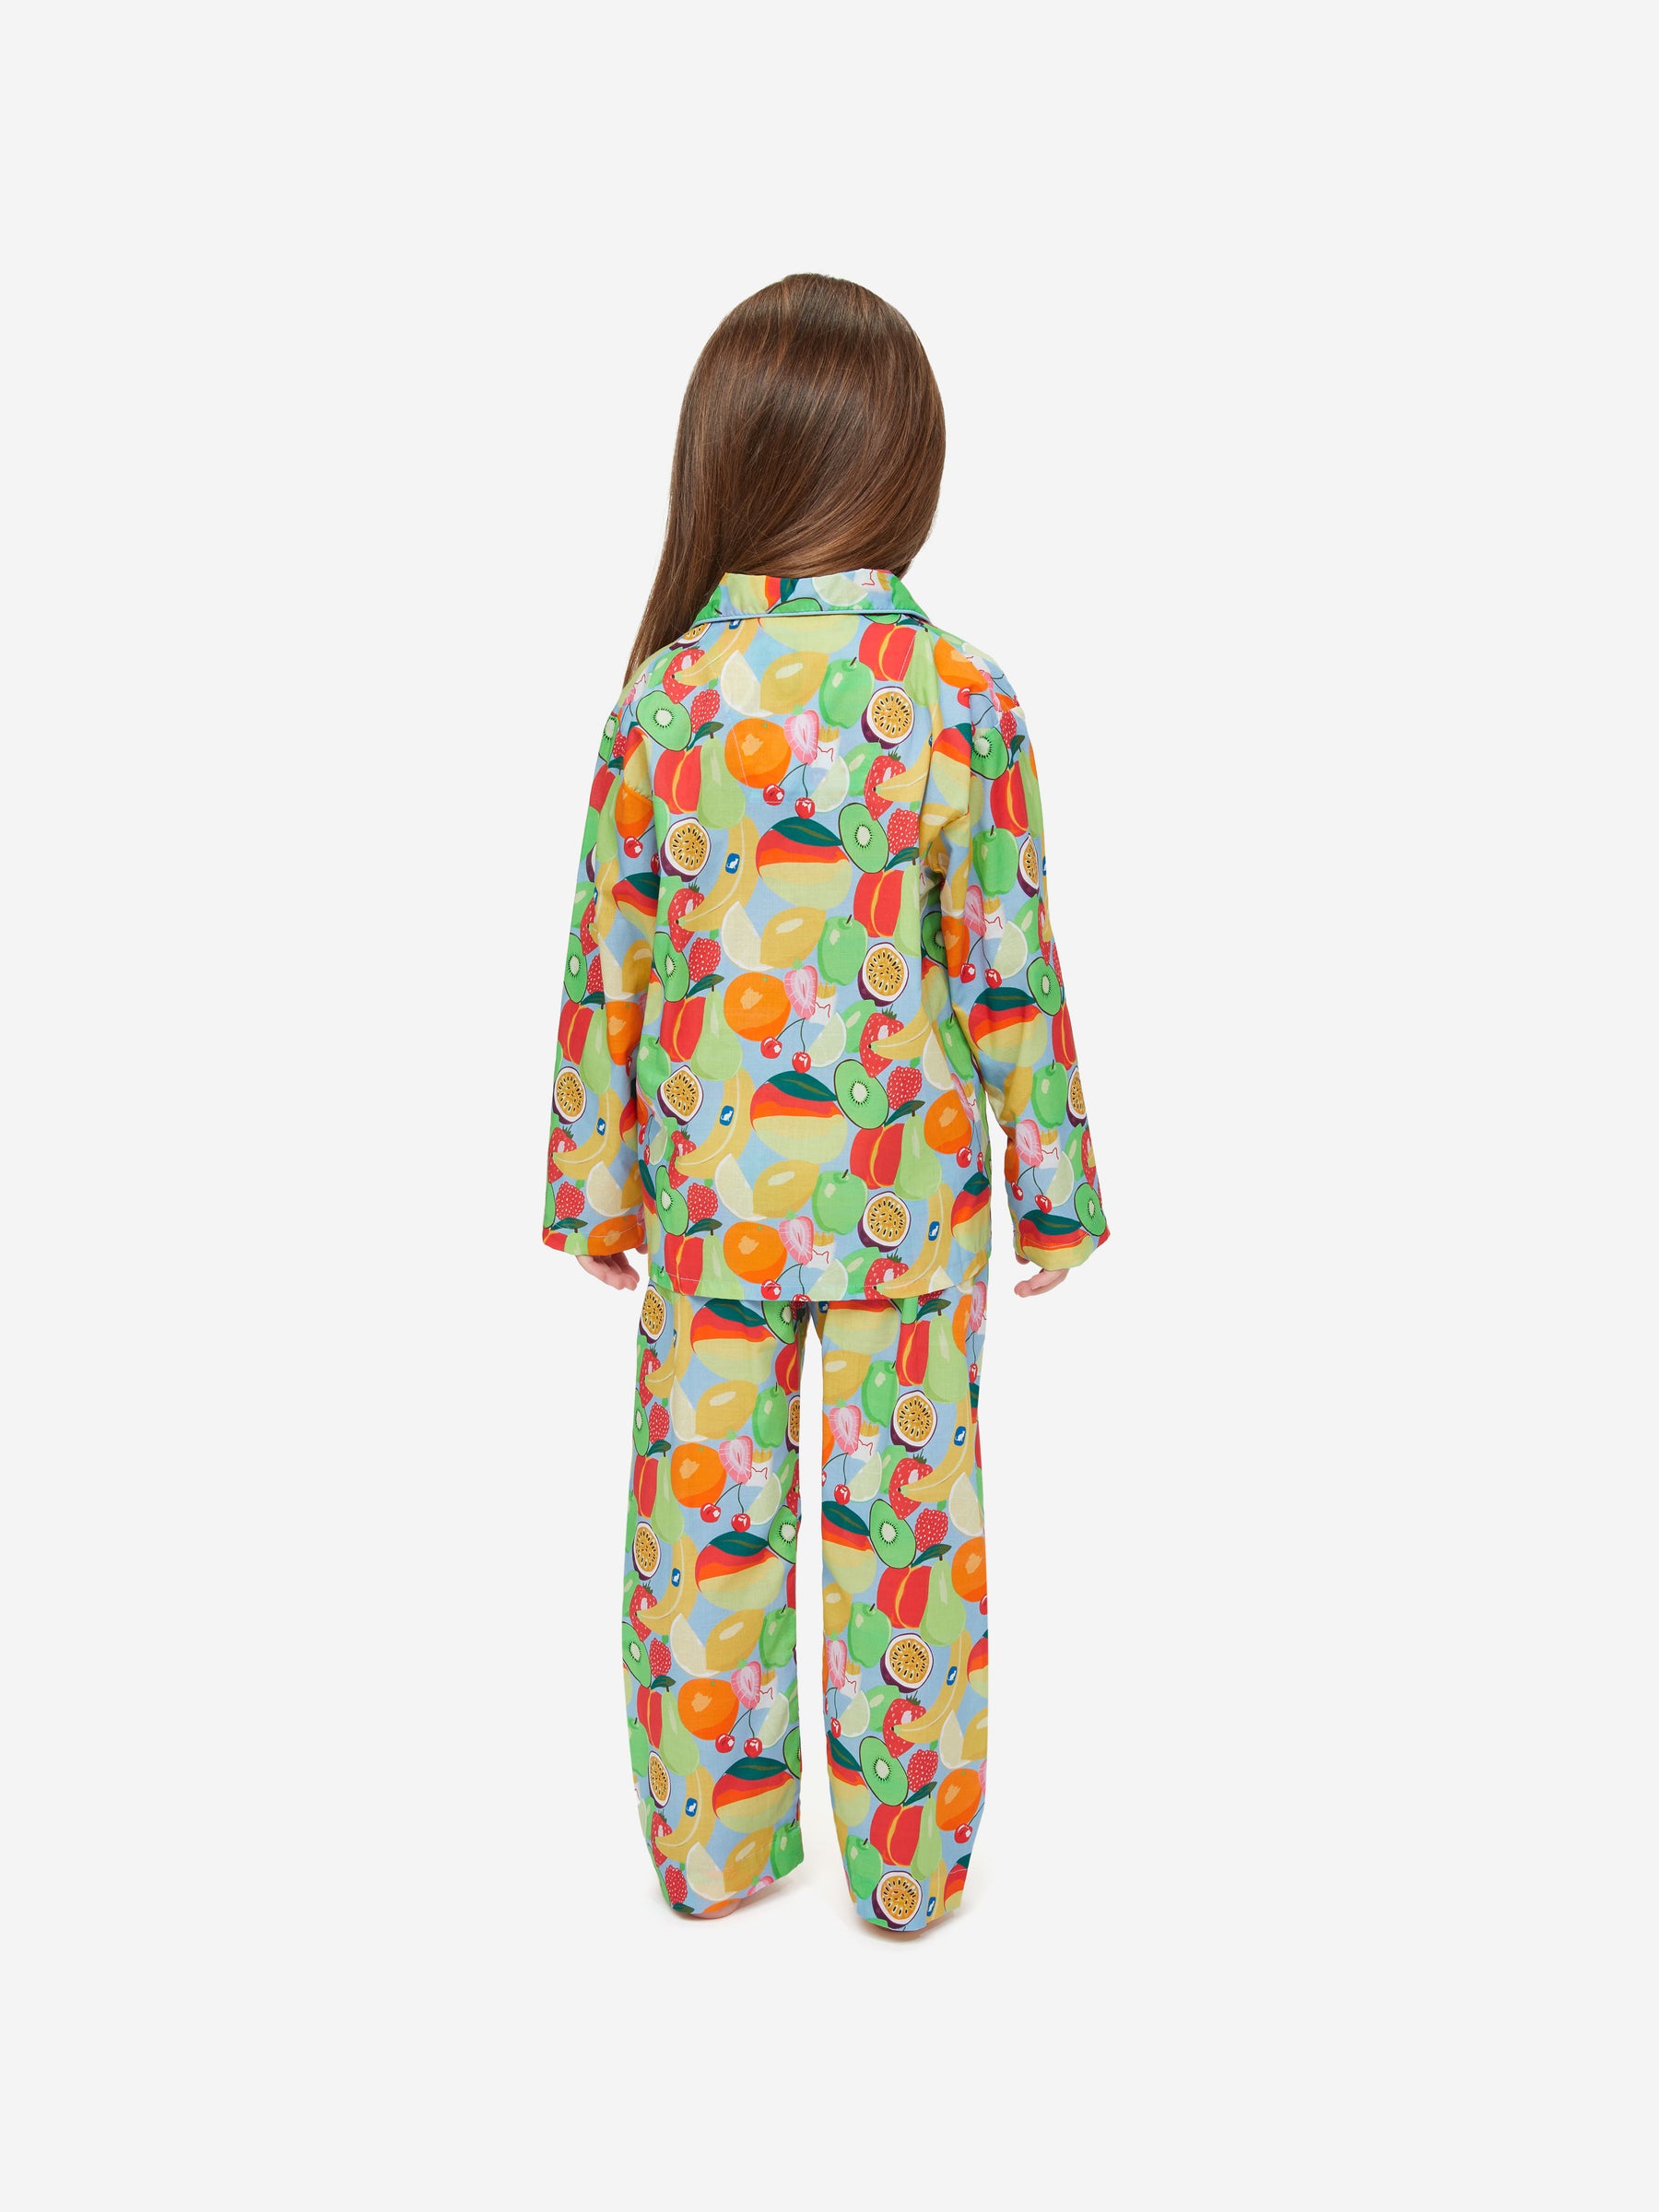 Kids' Pyjamas Ledbury 49 Cotton Batiste Multi